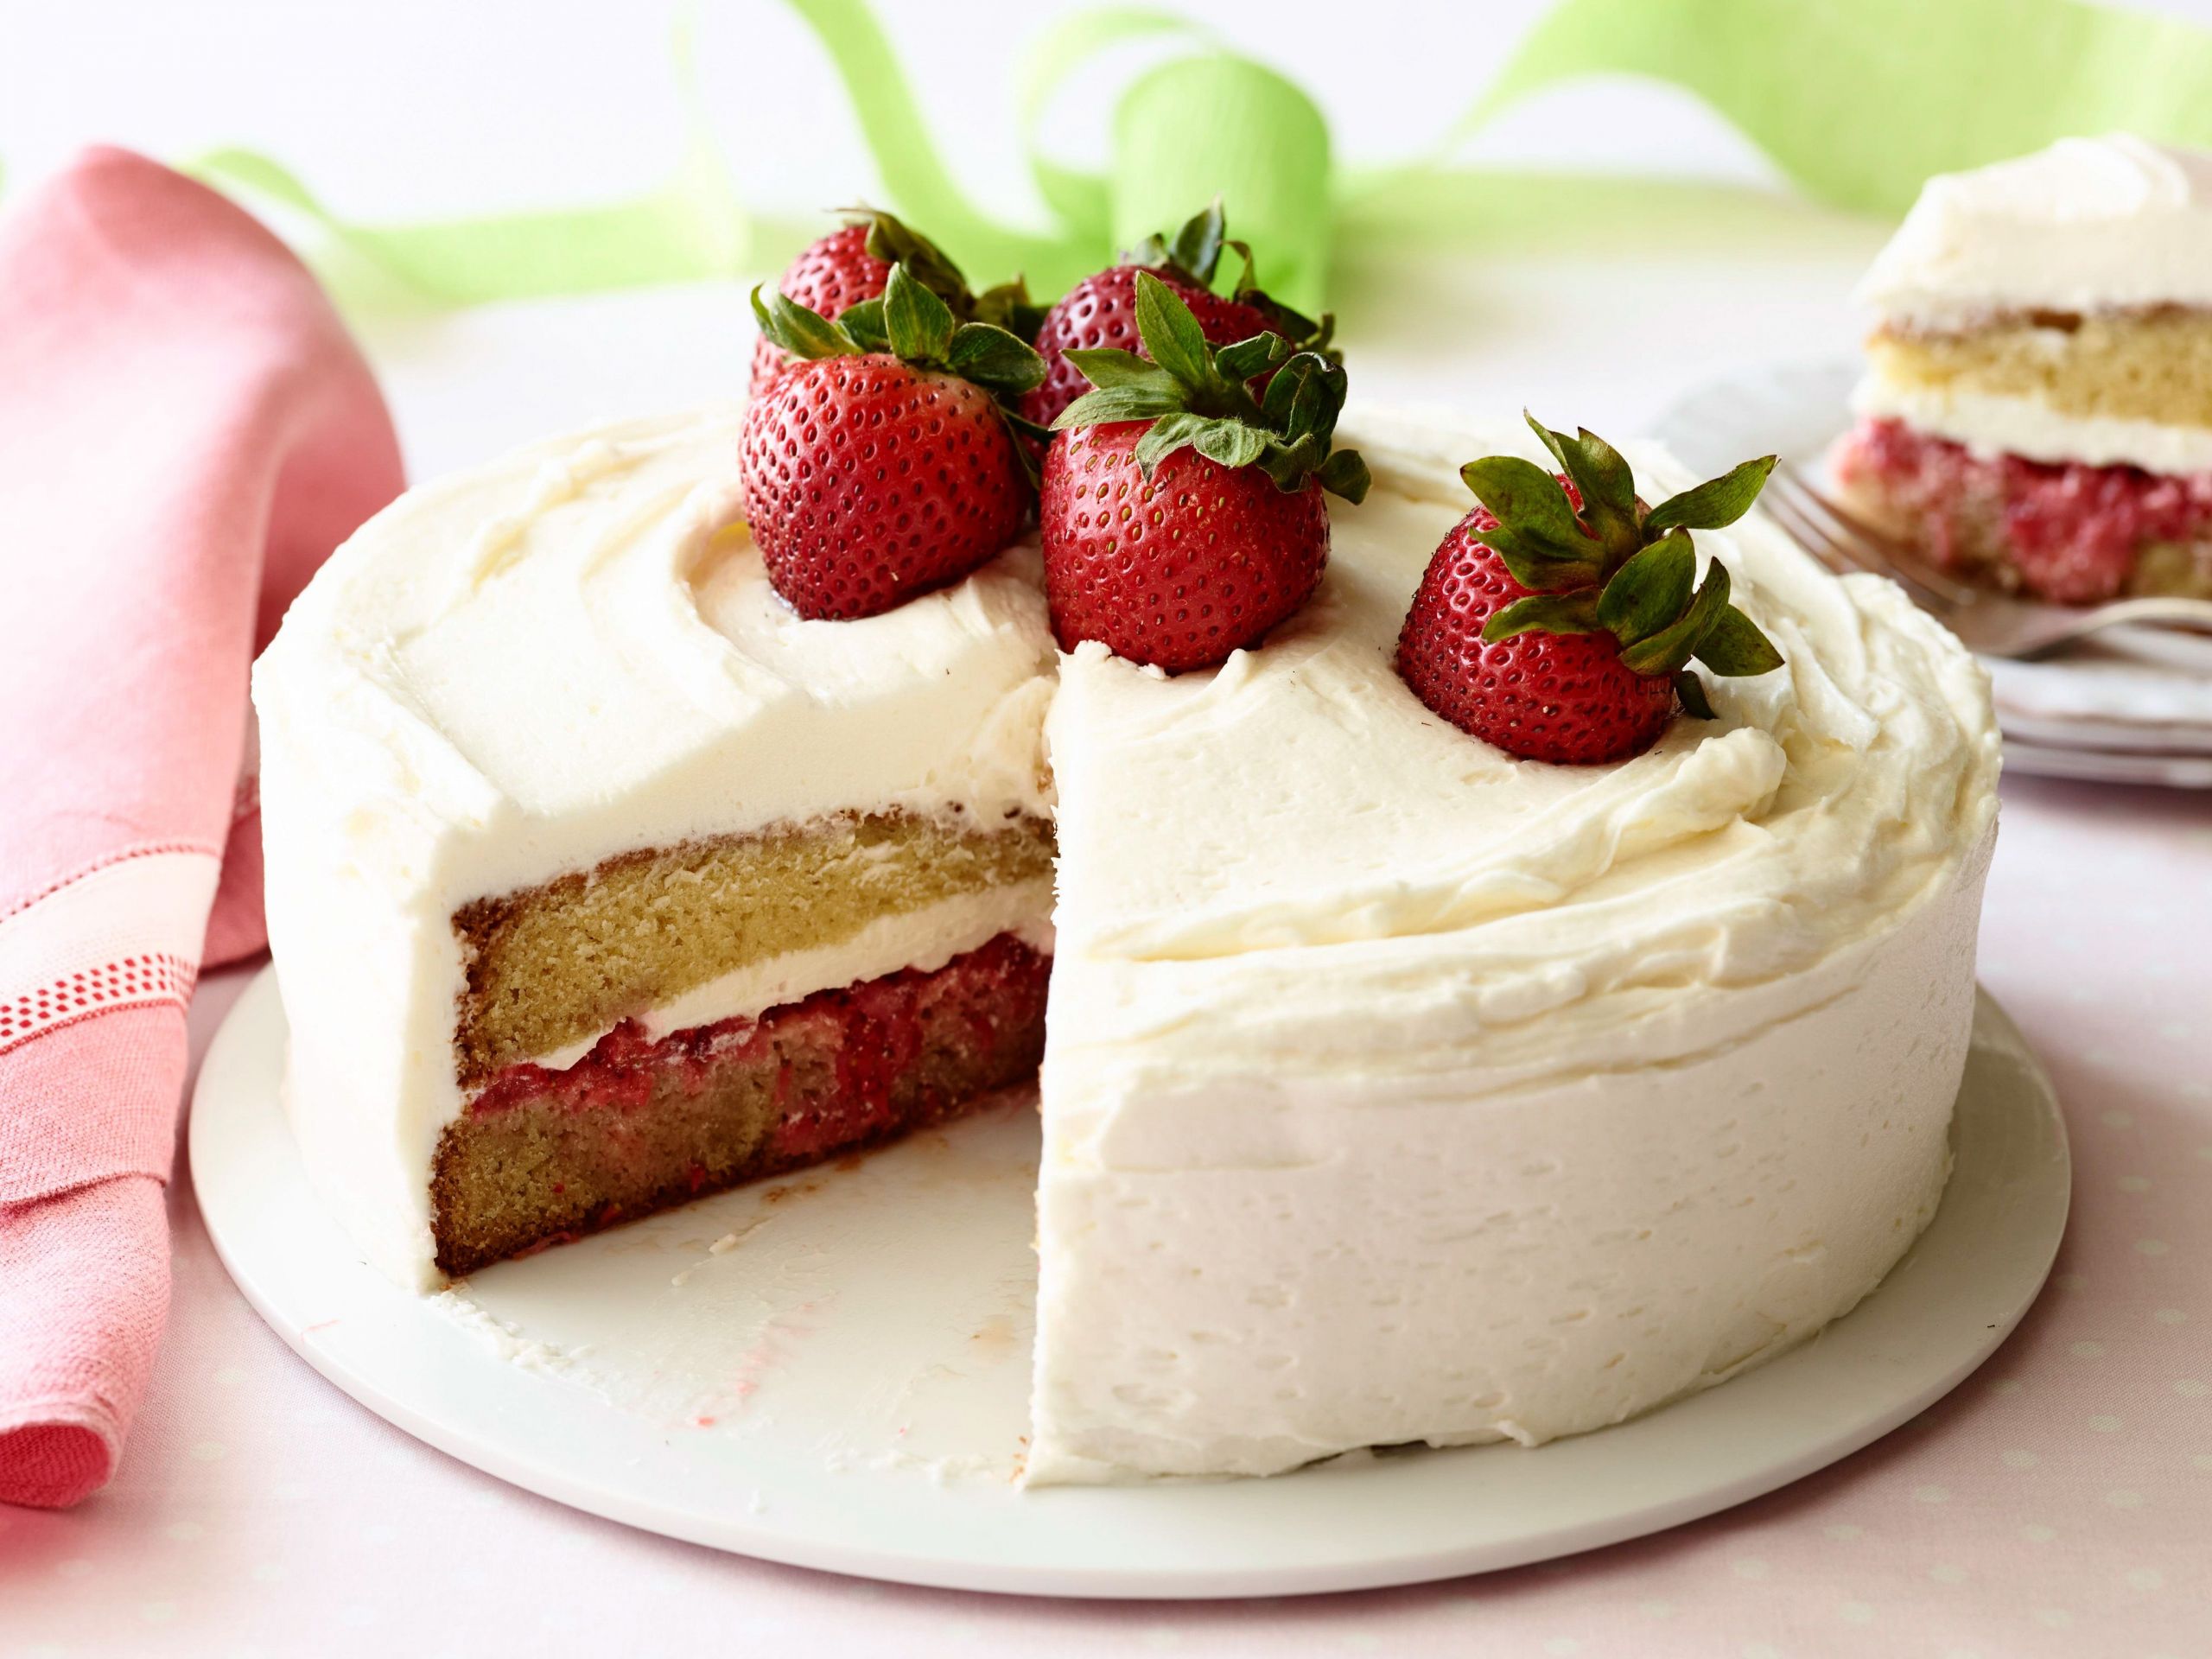 Strawberry Shortcake Birthday Cake Recipe
 Strawberry Shortcake Cake Recipe in 2019